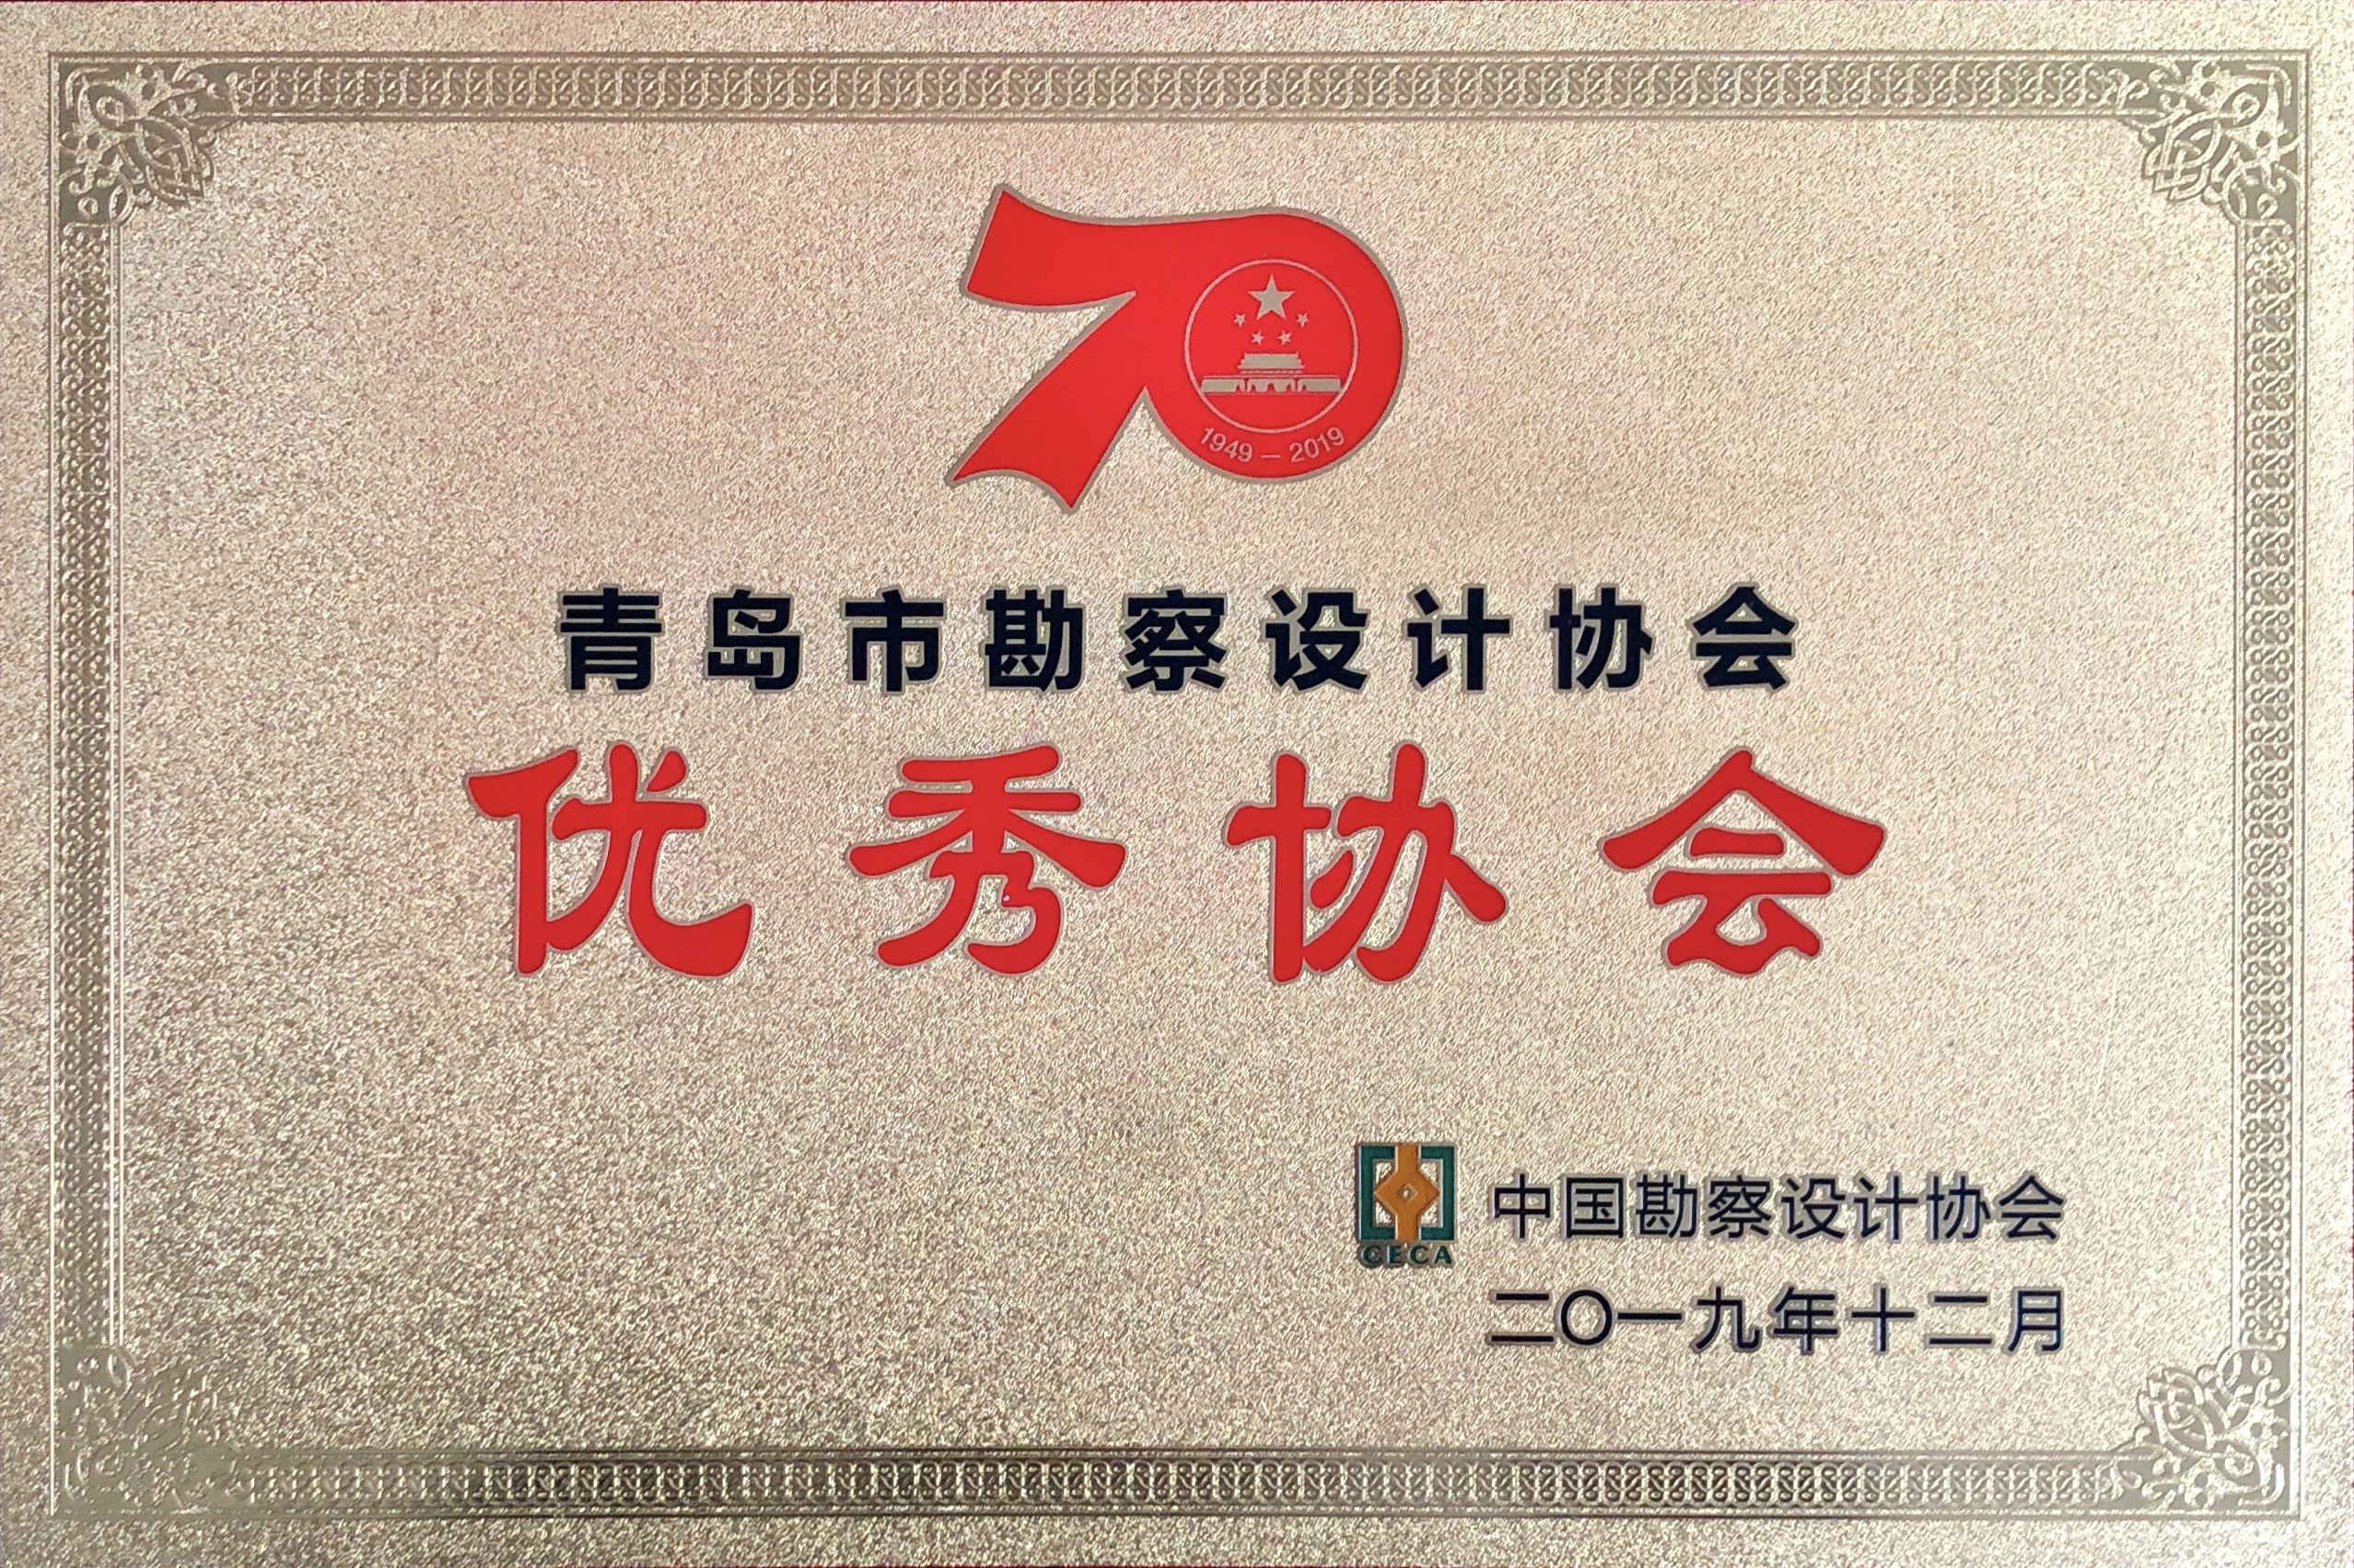 熱烈祝賀全國同業協會共慶新中國成立七十周年大會在廣州成功舉辦 我市工程勘察設計行業獲得多項榮譽稱號